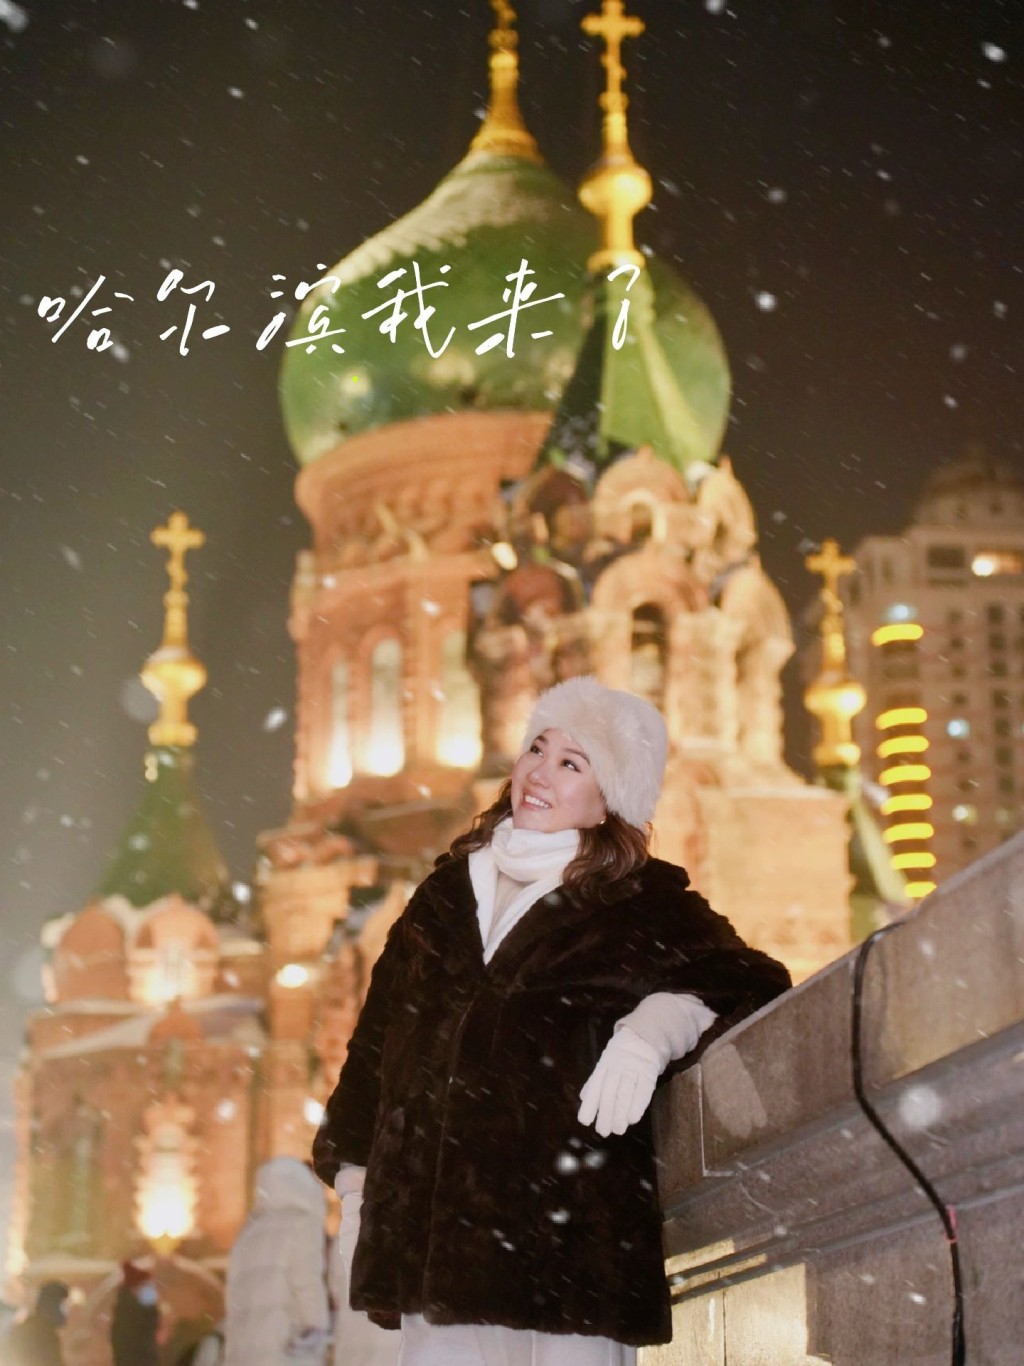 曾昭怡也有于小红书分享在哈尔滨的照片。